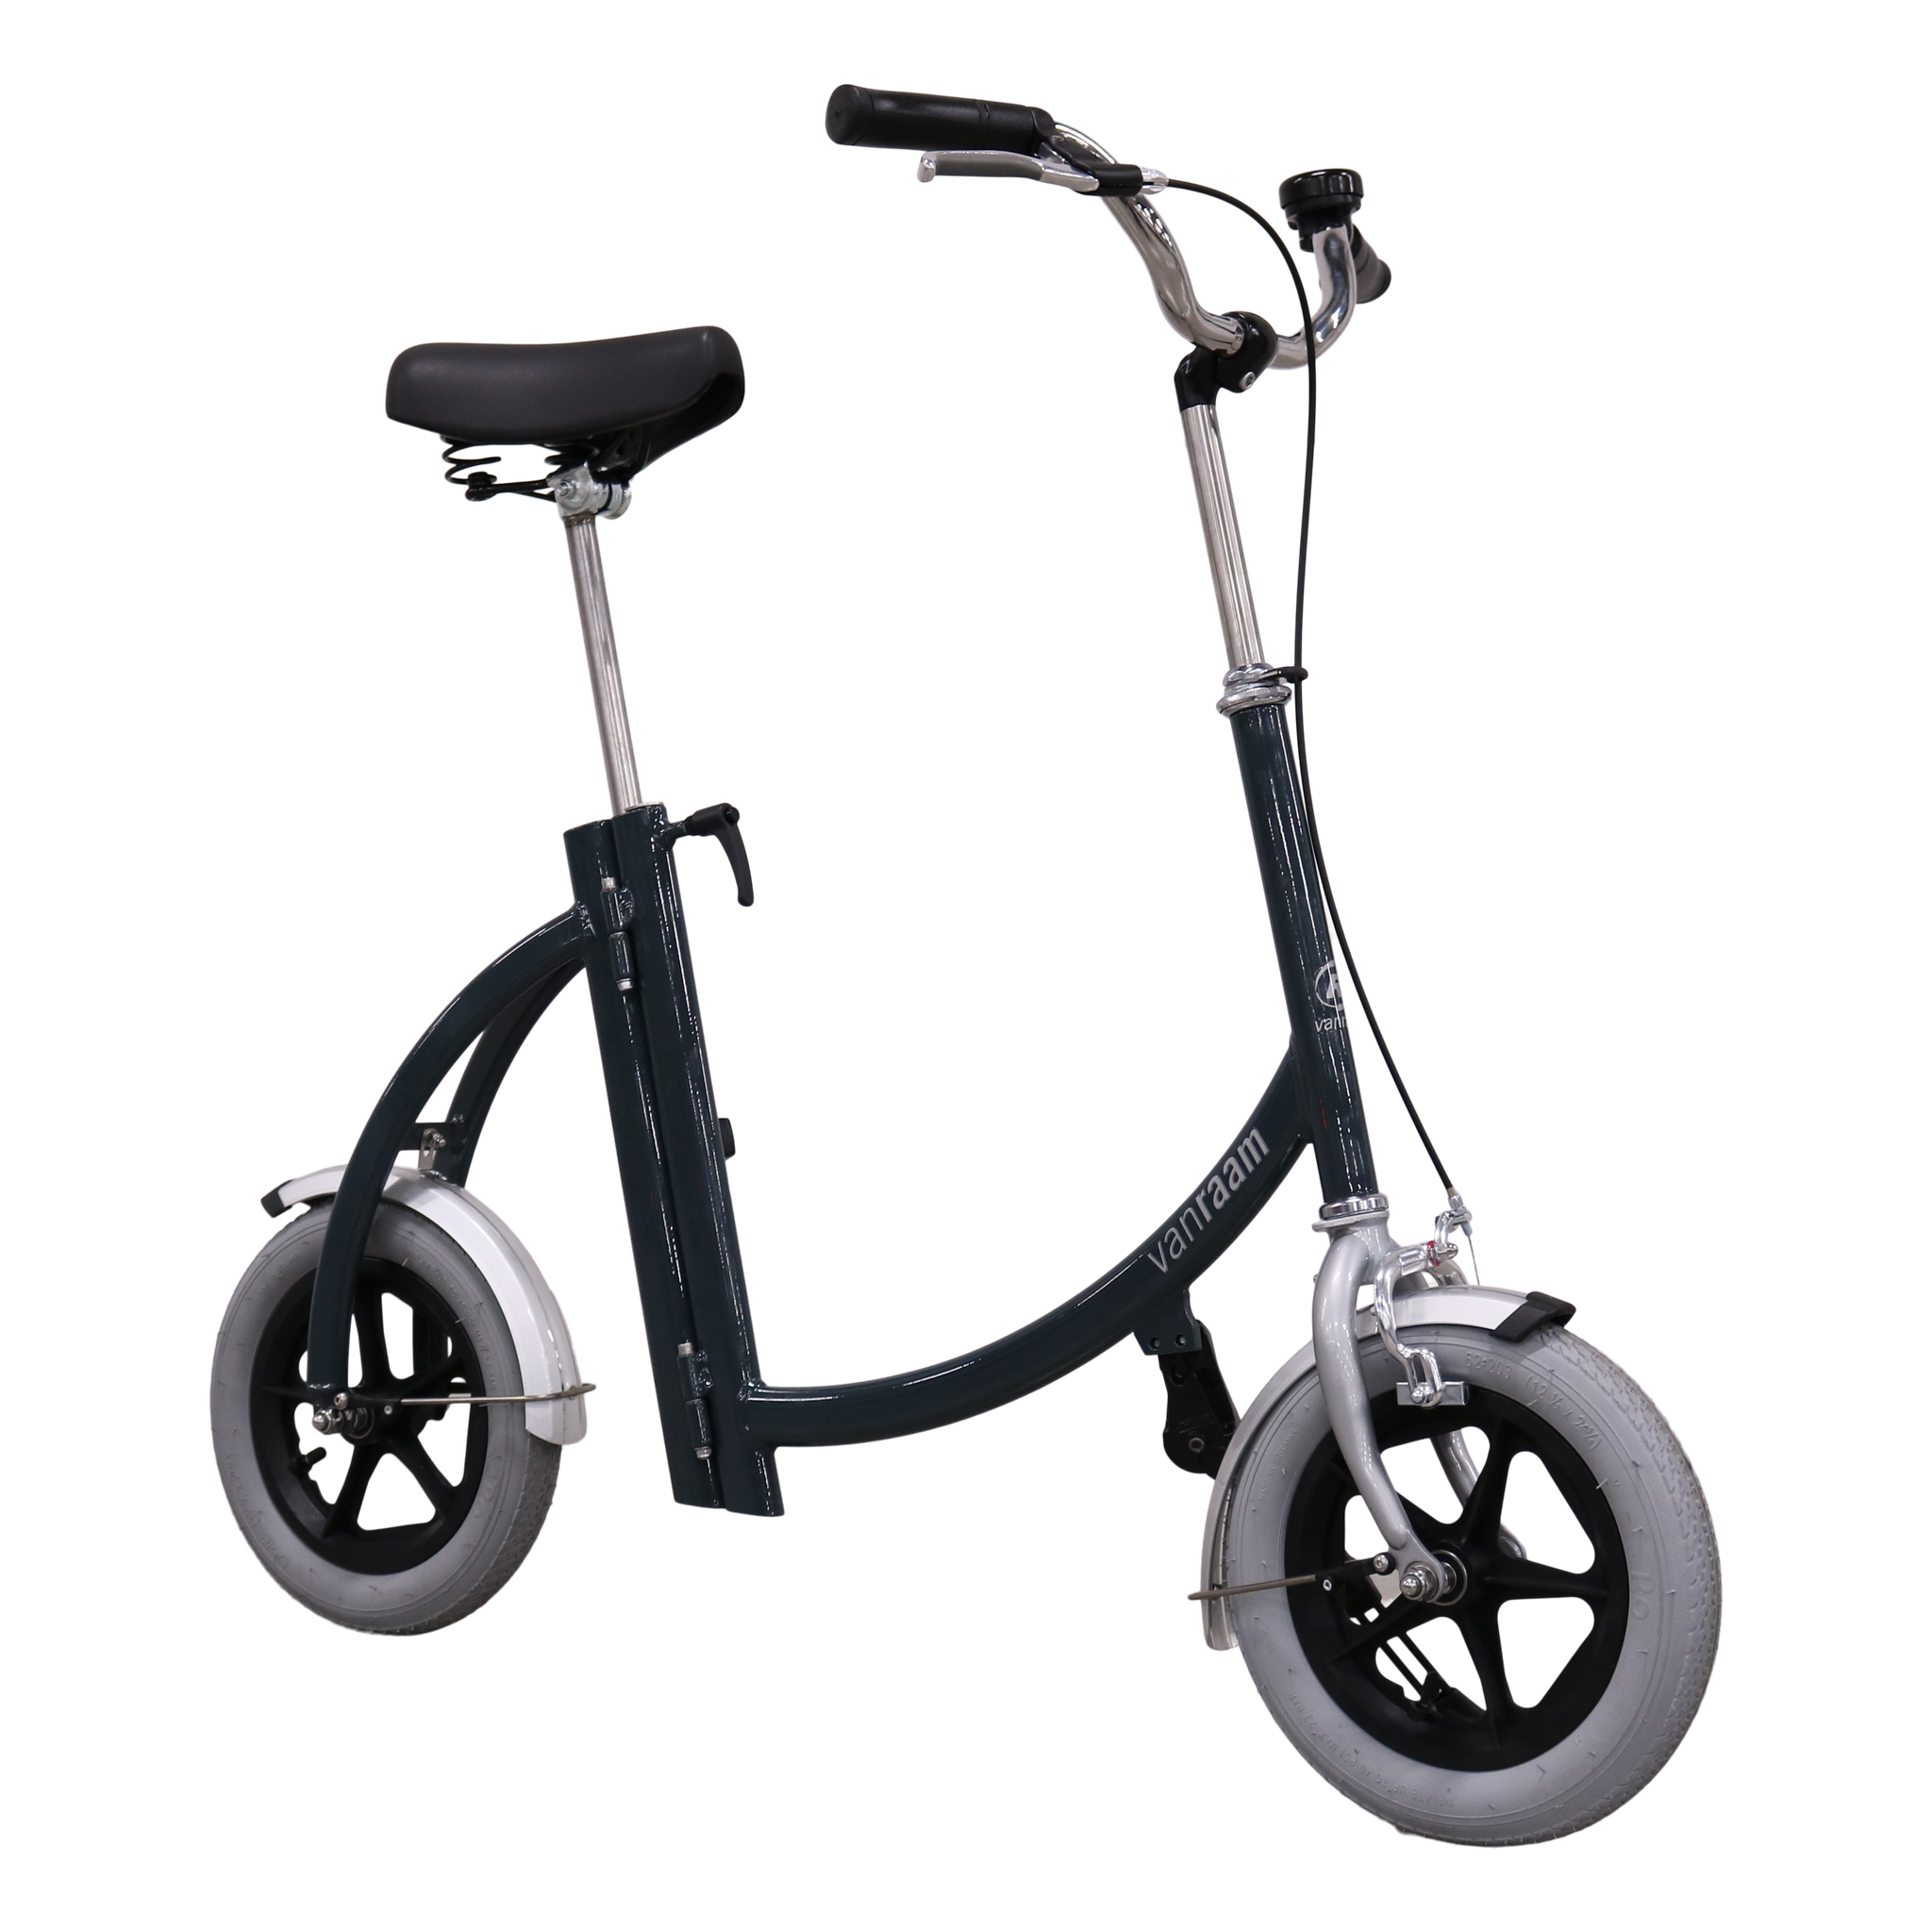 Goed gevoel Stemmen Verhuizer Van Raam City Loophulp - Loopfiets | Ideaal voor uw mobiliteit –  Scootmobiel Friesland